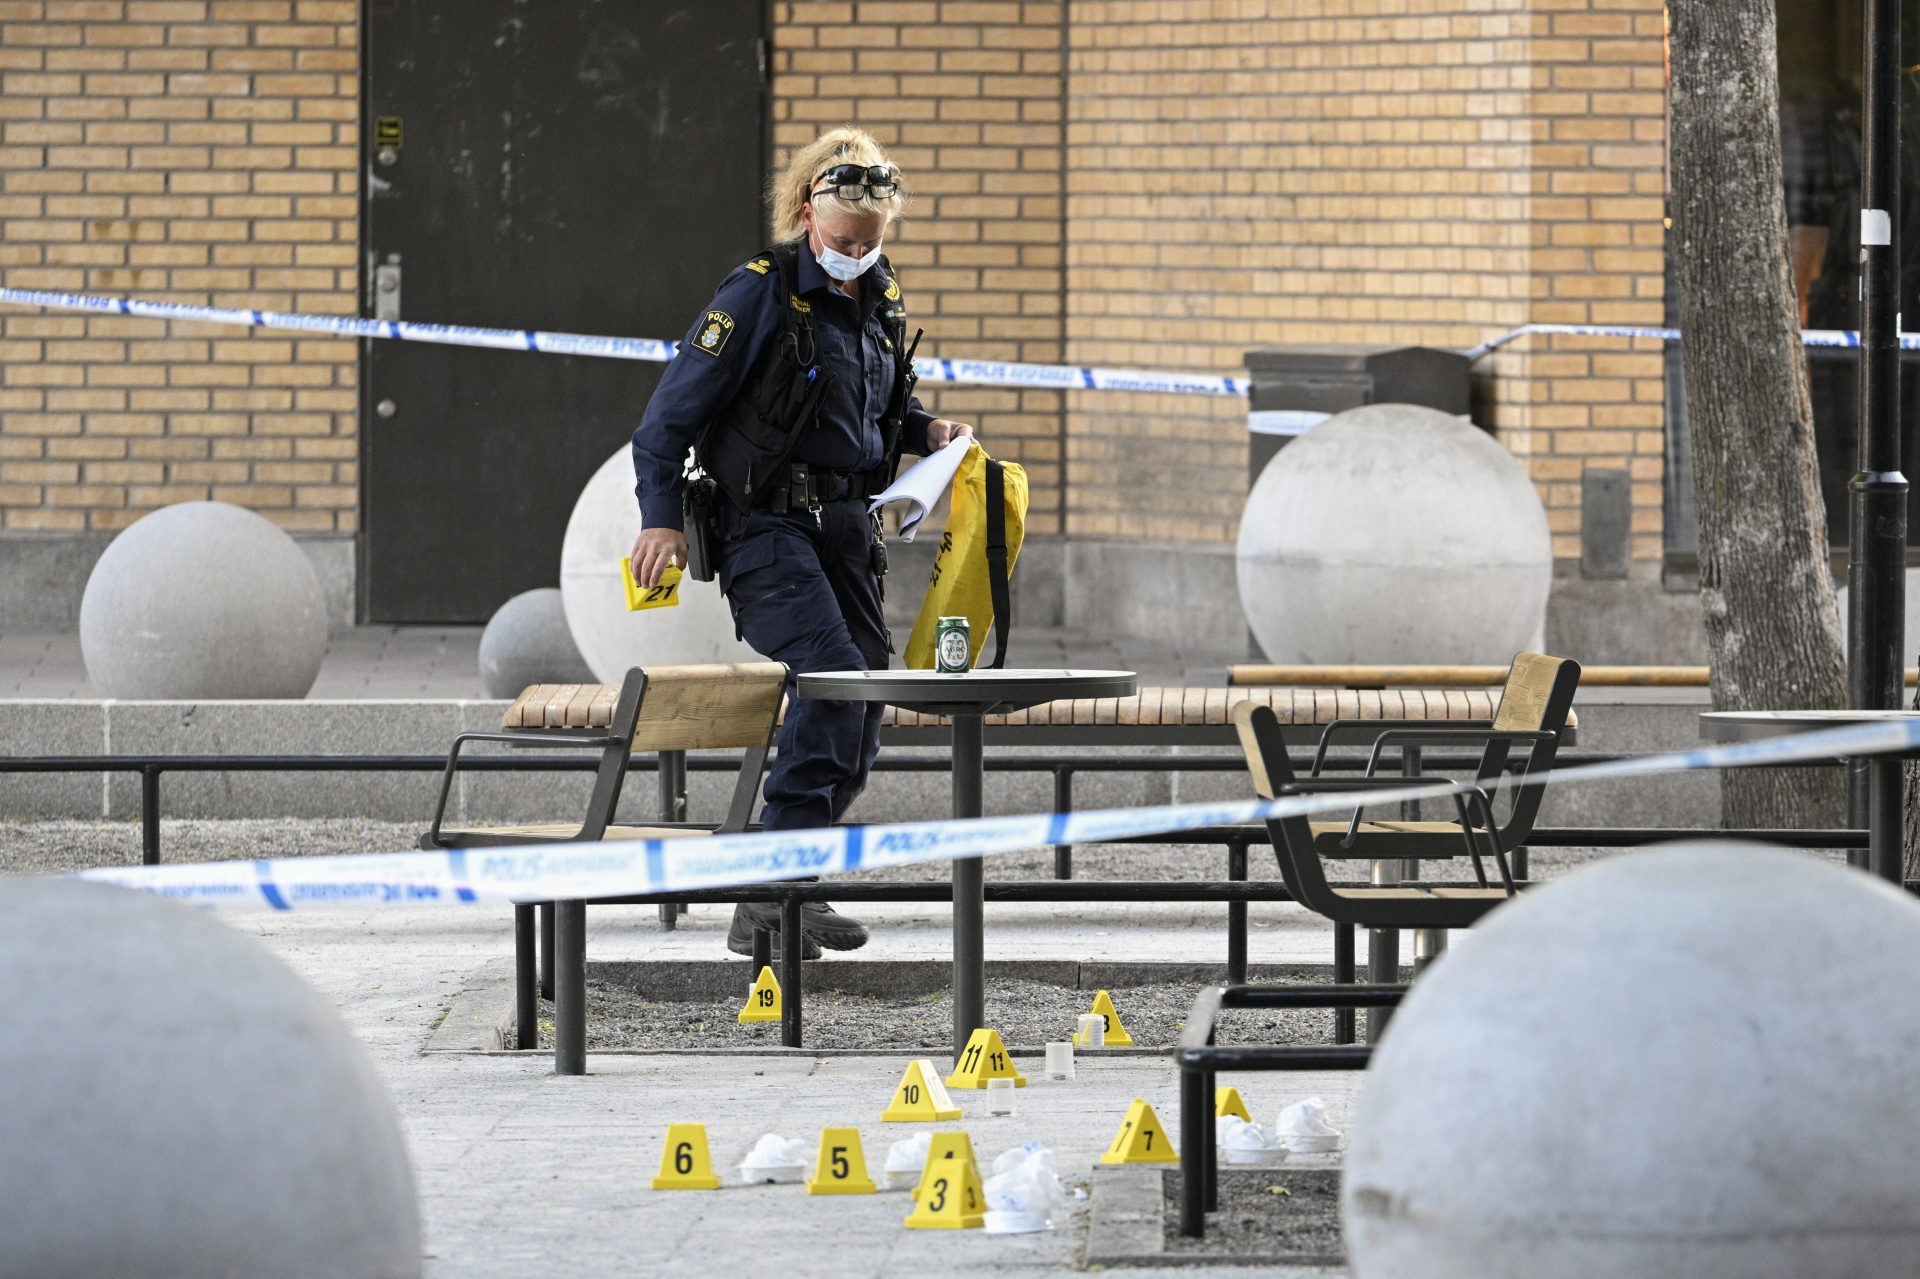 Dos adolescentes de 15 años murieron y otras dos personas resultaron heridas en un tiroteo ocurrido este sábado en Estocolmo, informó la policía, que ha detenido a dos sospechosos aunque se desconocen todavía las causas del suceso